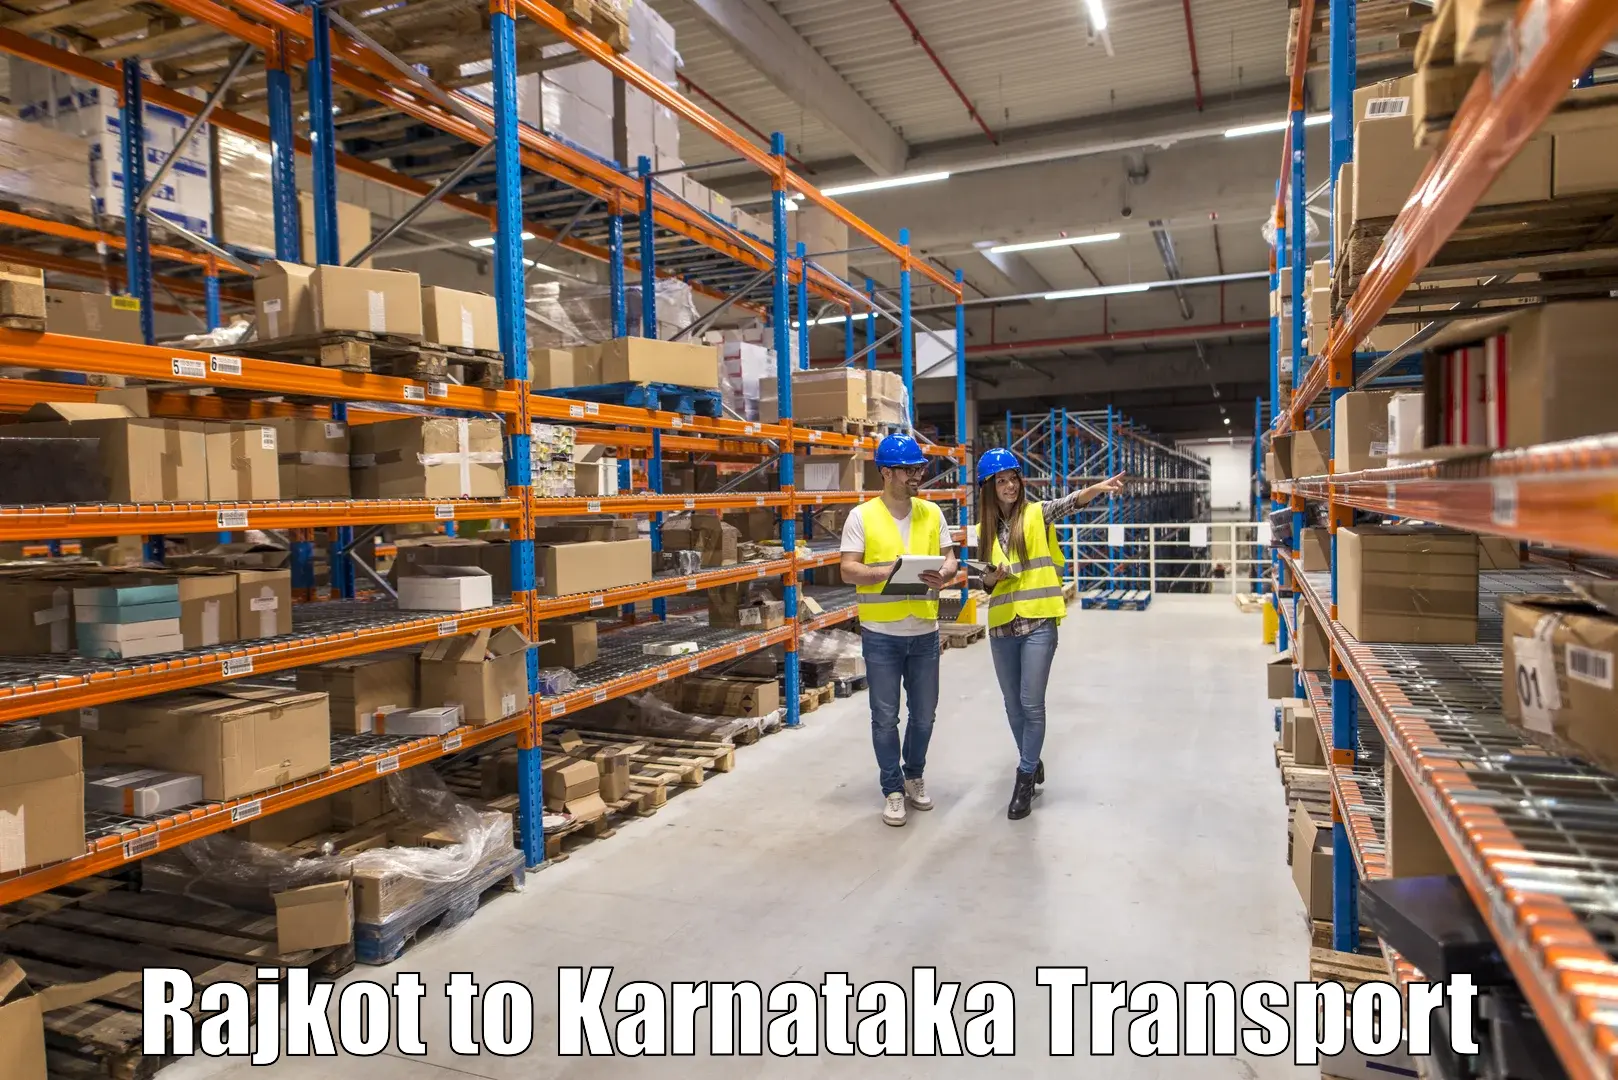 Truck transport companies in India Rajkot to Dandeli